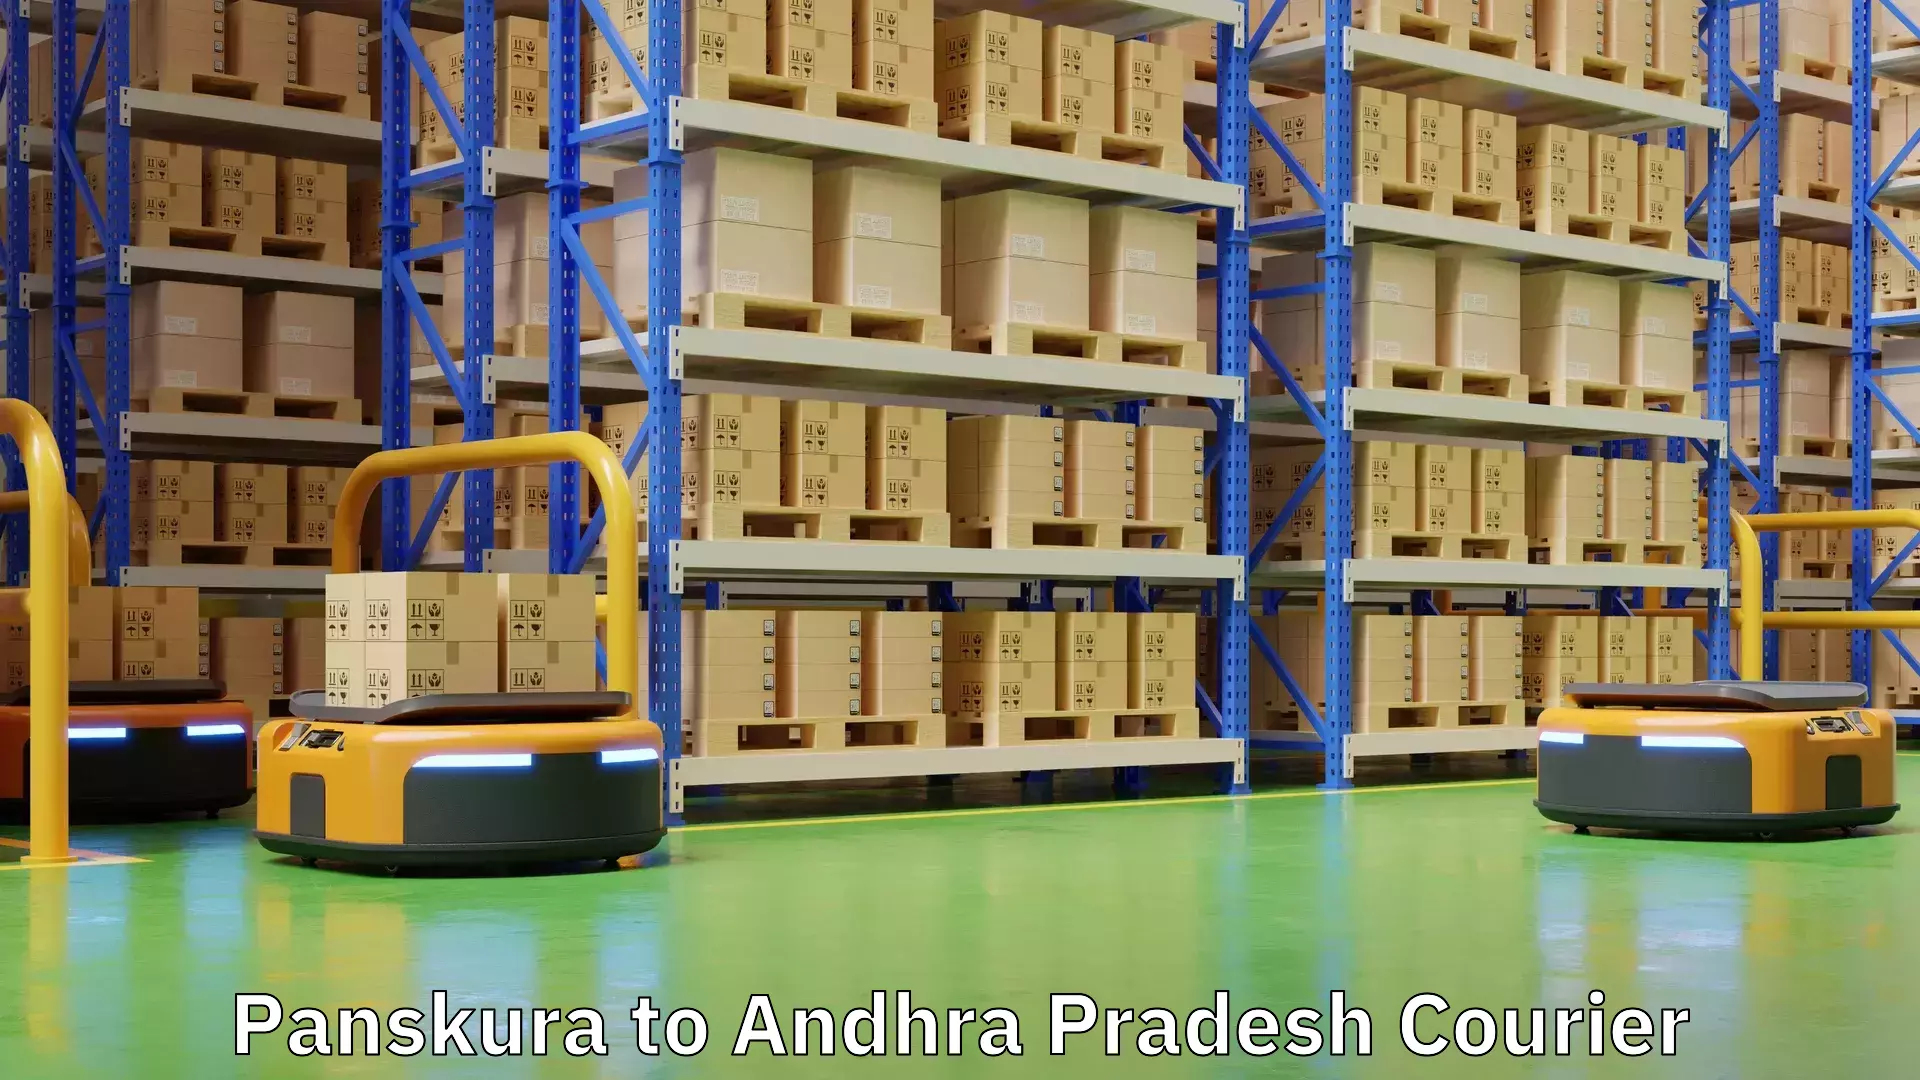 Seamless shipping service Panskura to Andhra Pradesh